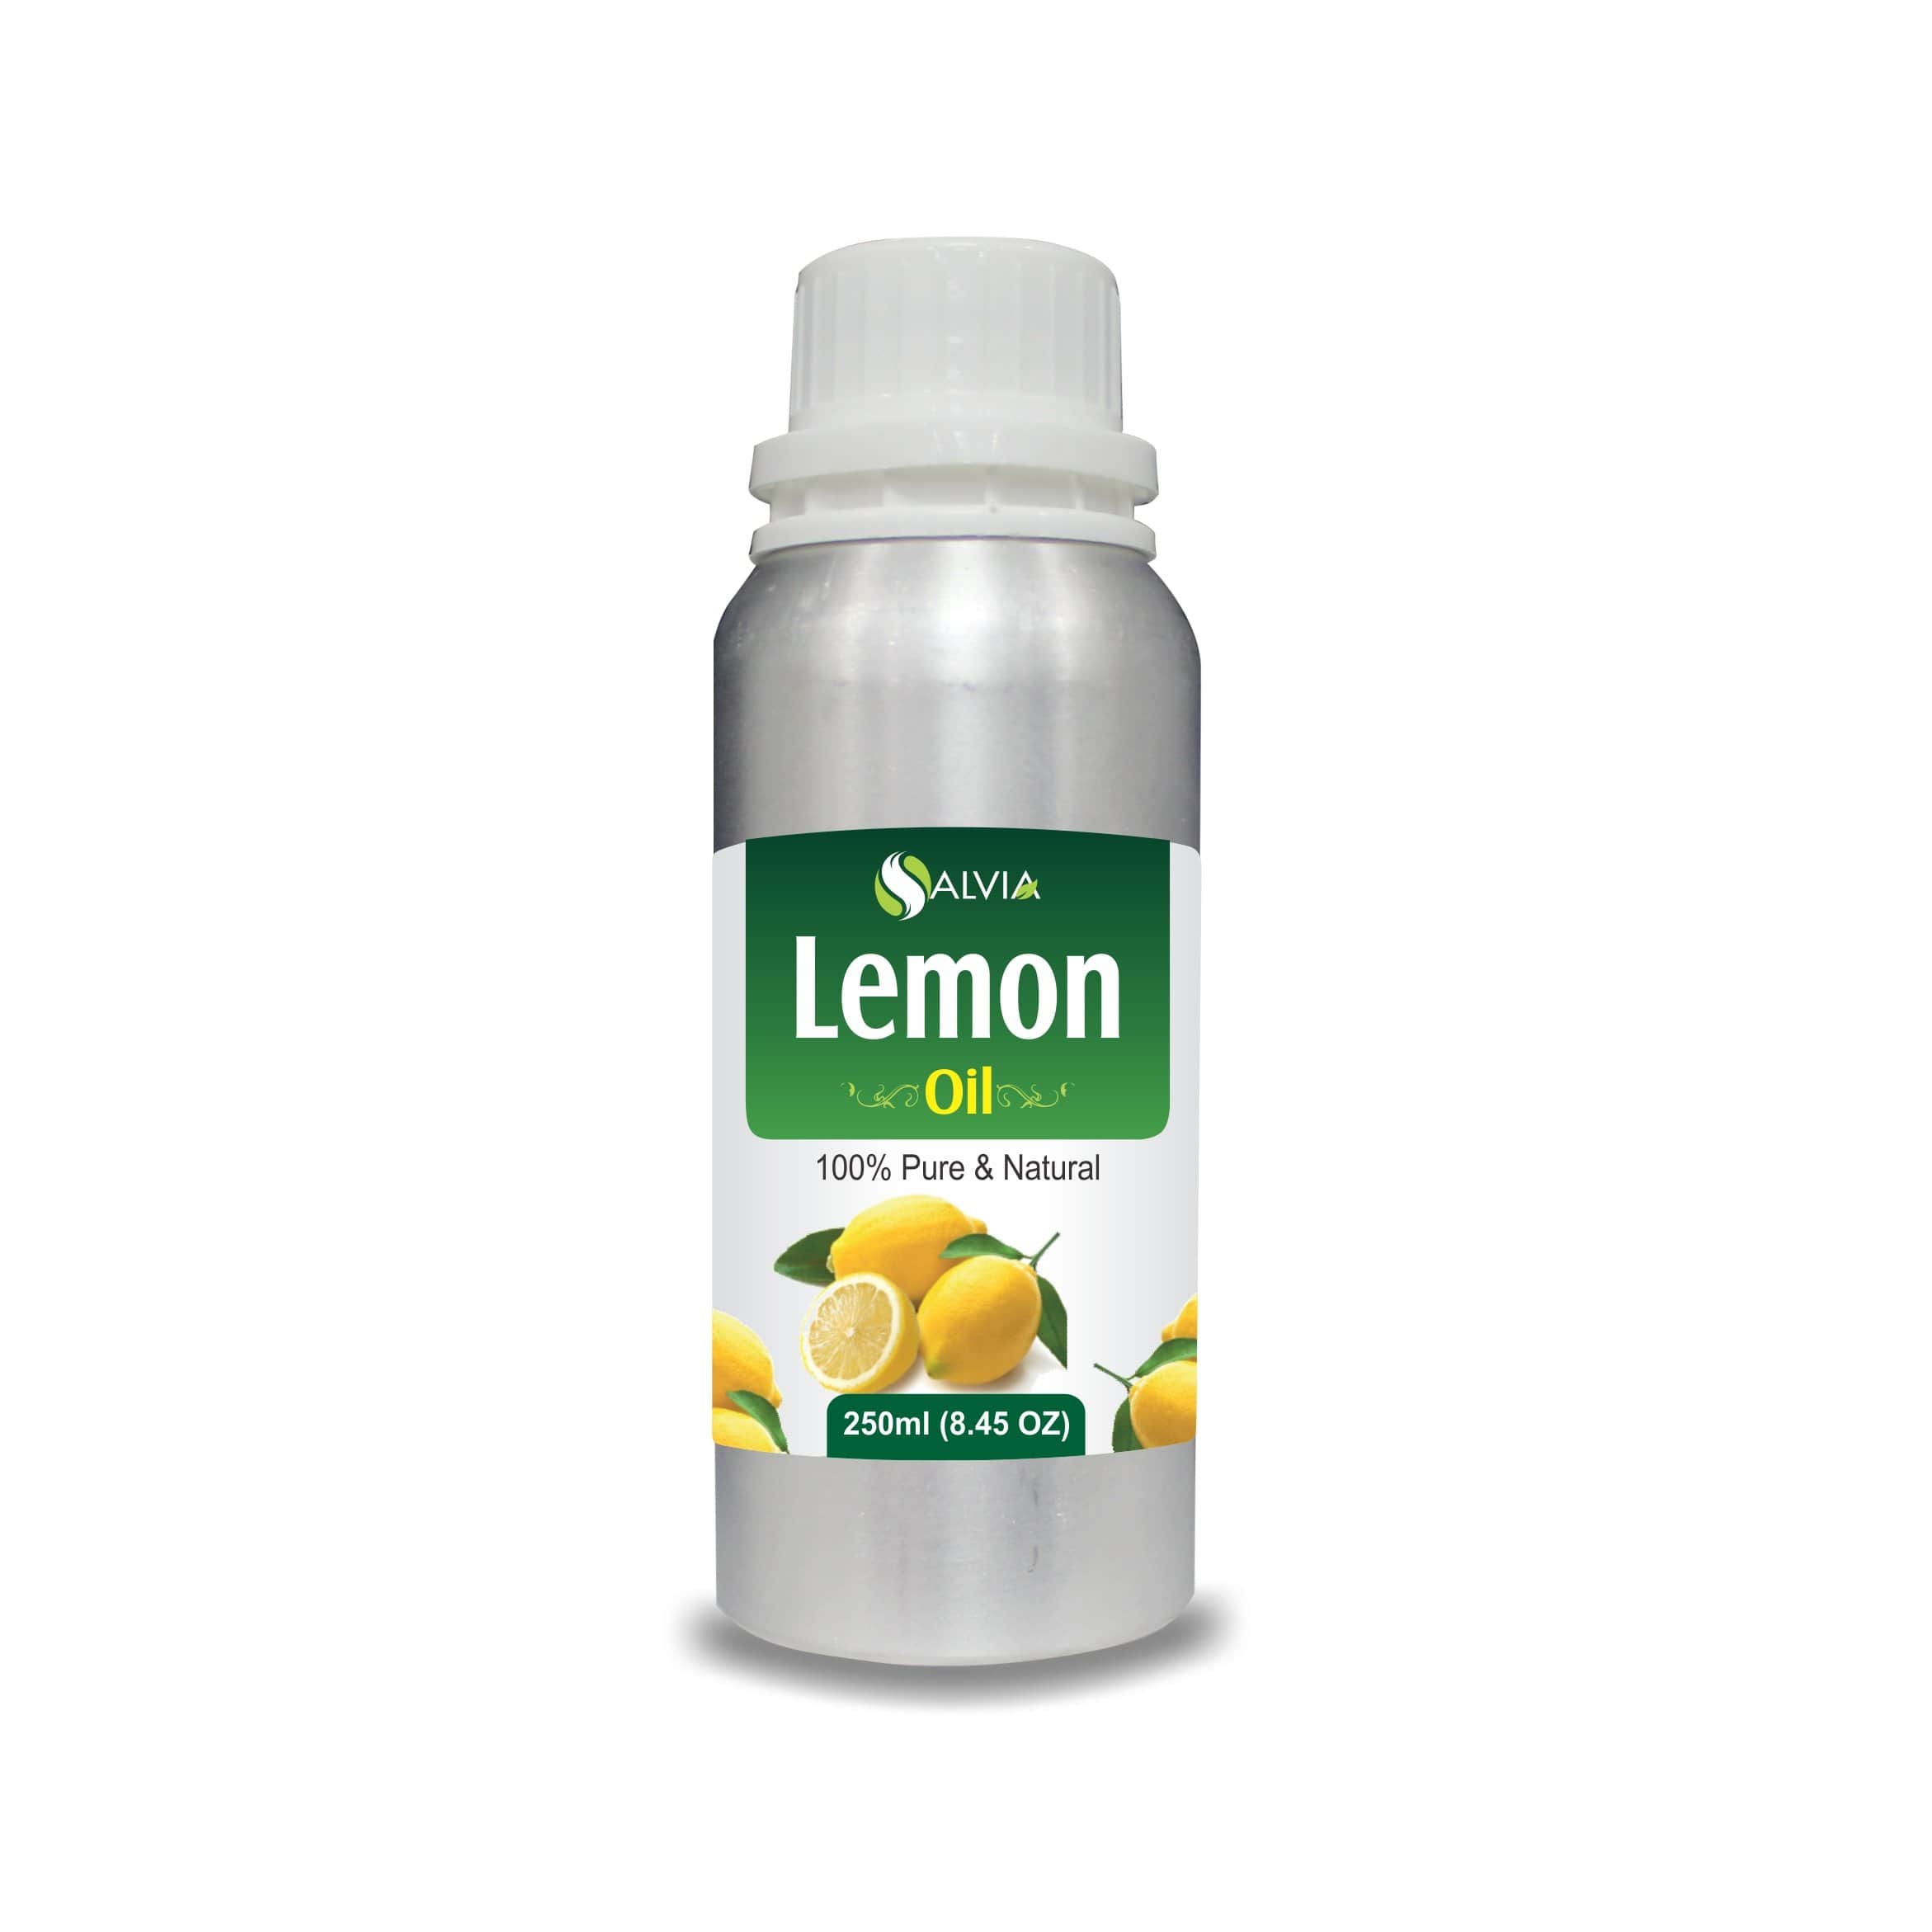 lemon oil on face overnight